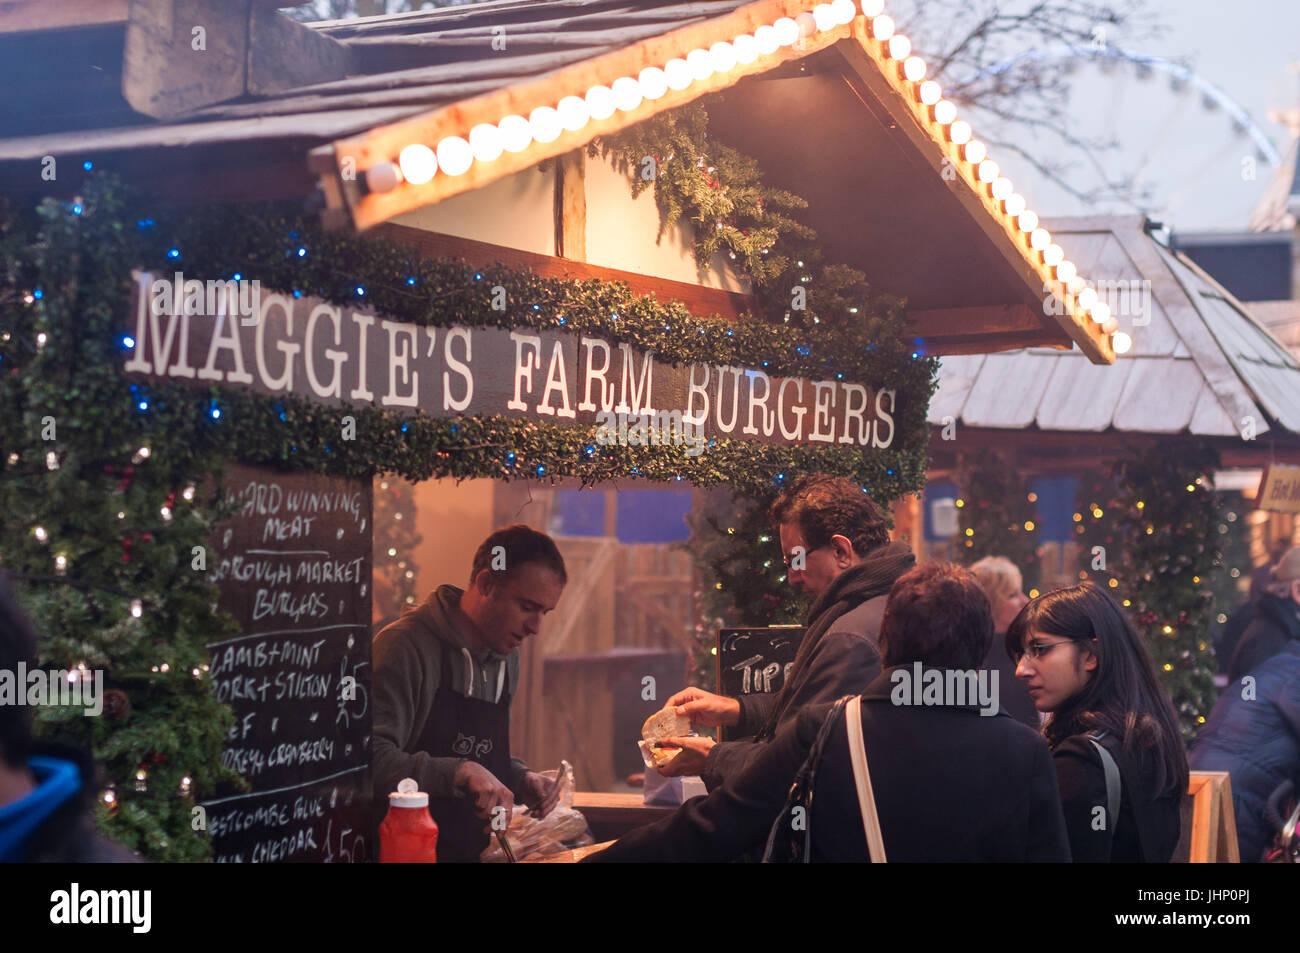 Hyde Park Winter Wonderland Maggie's Farm Stand de hamburgers, Londres, Royaume-Uni Banque D'Images